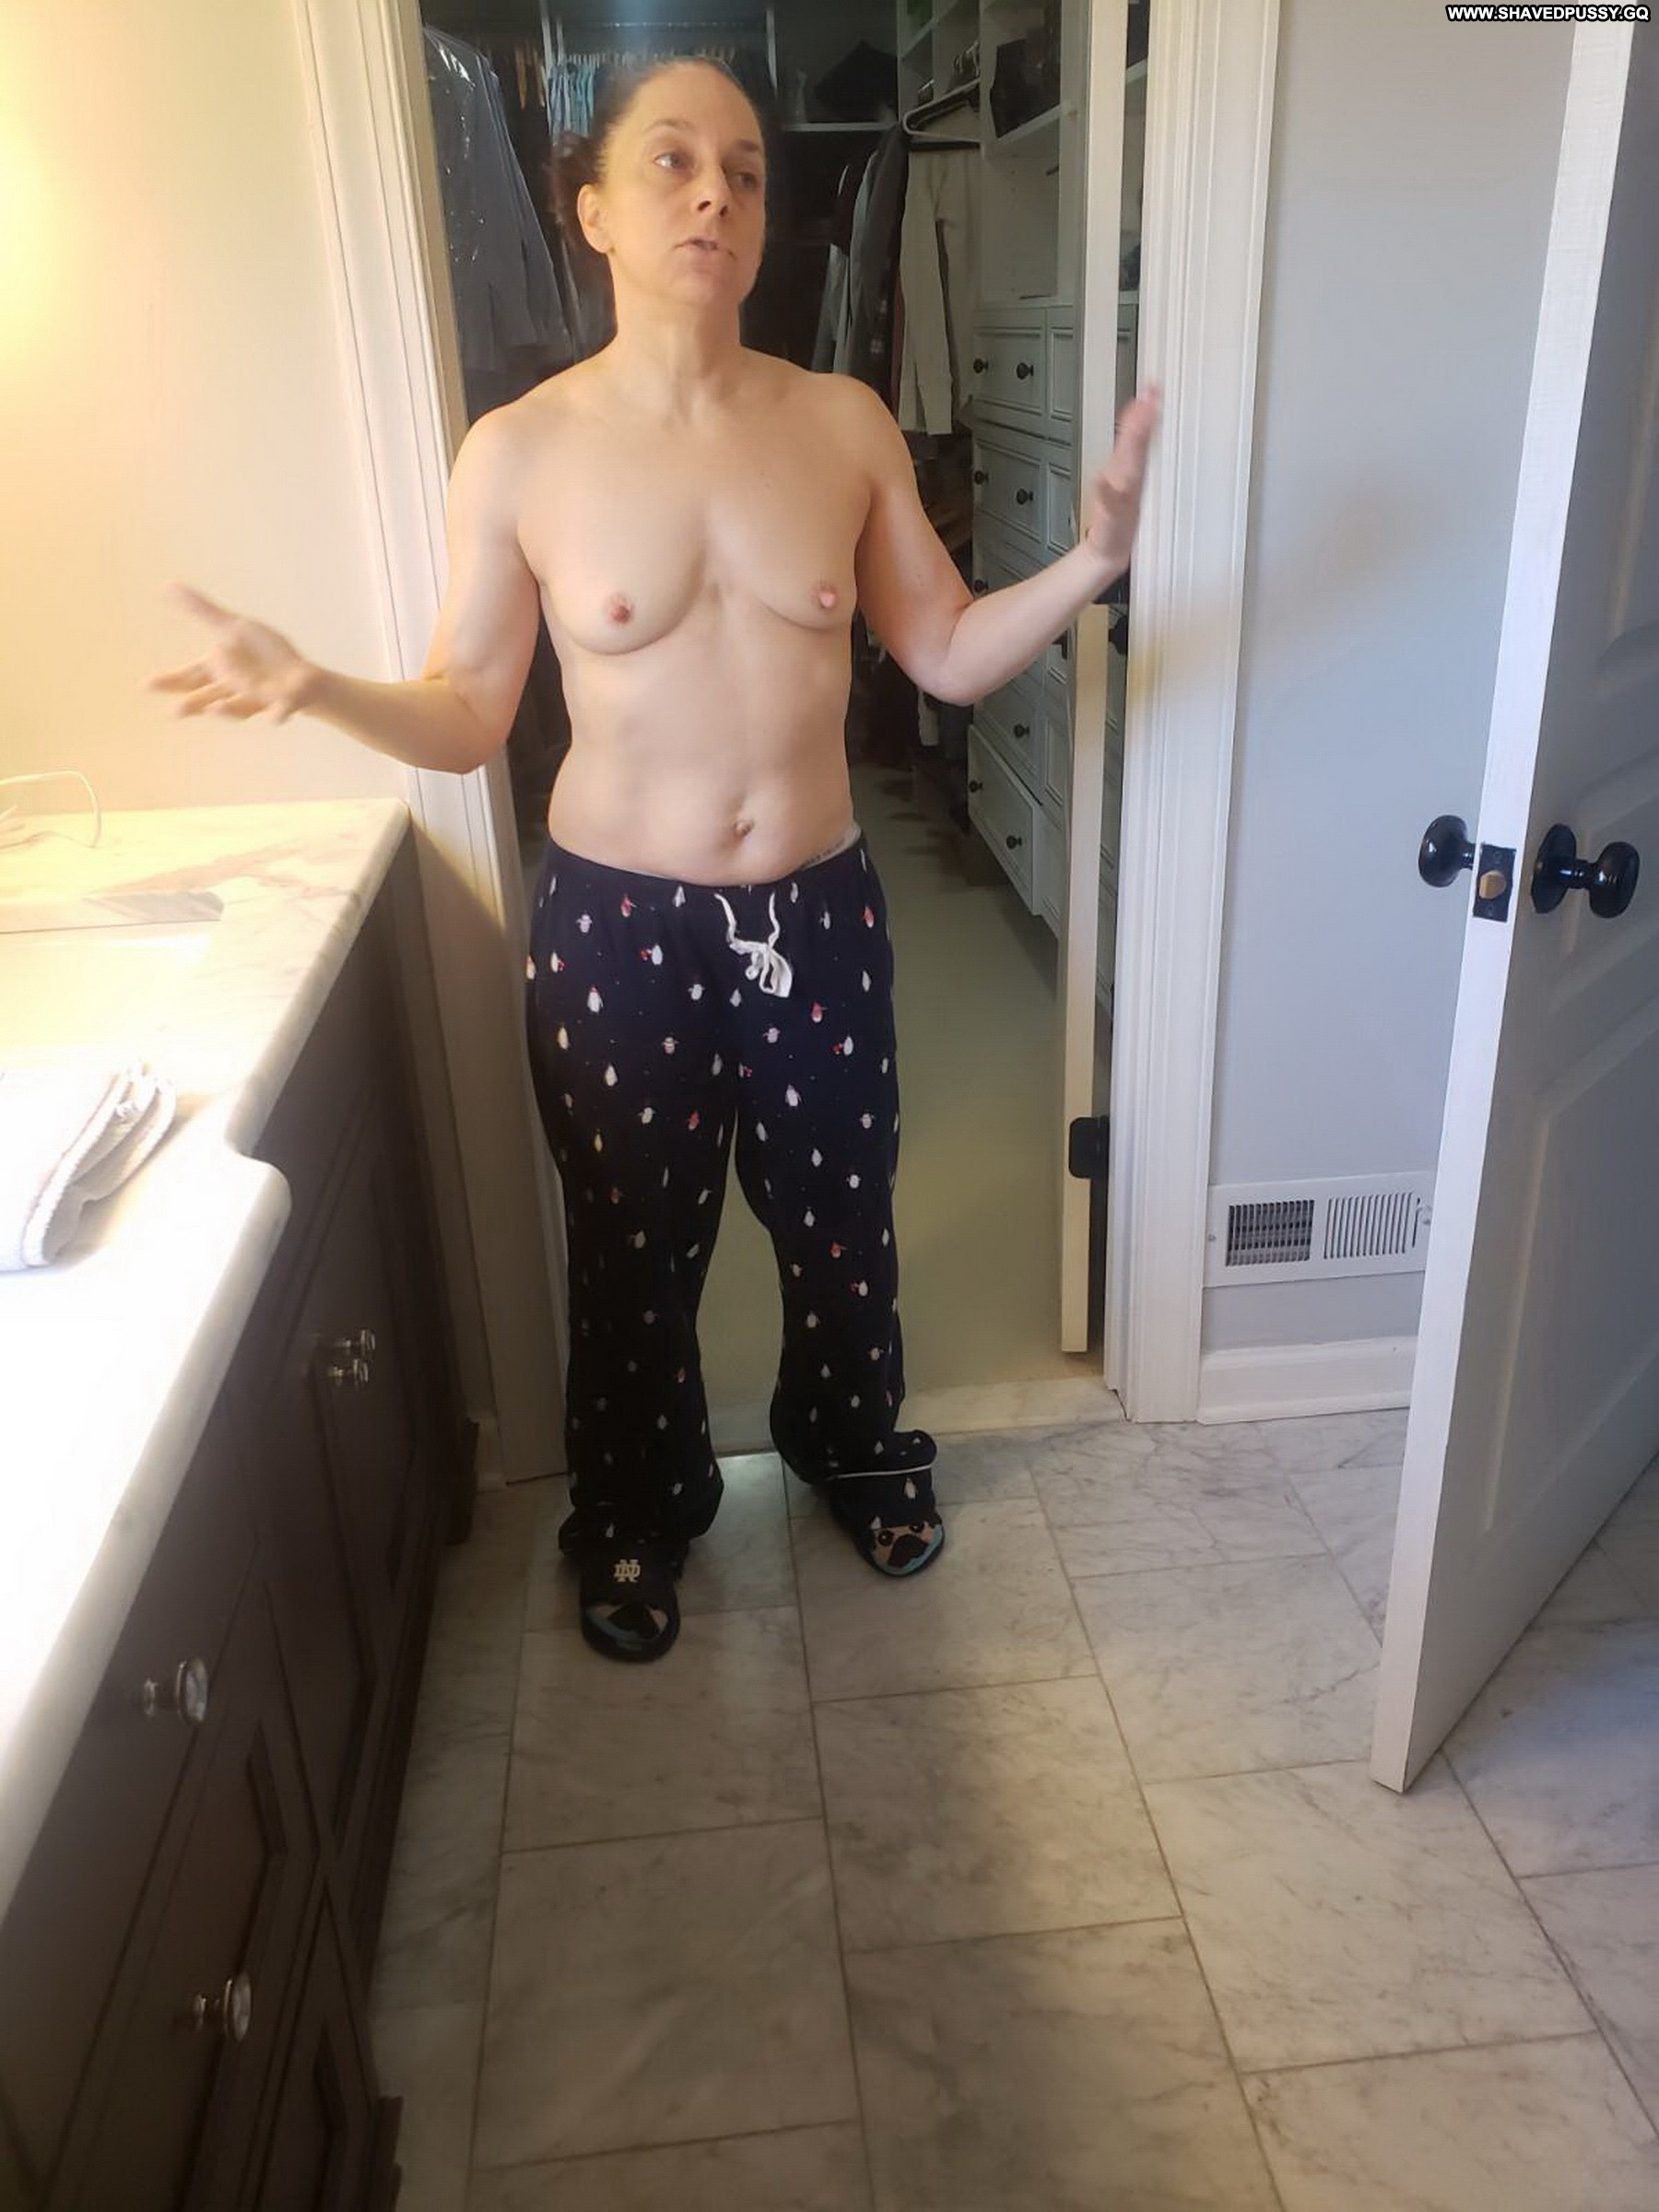 Dena Underwear Nude Wife Fit Hot Vagina Xxx Bra Pictures photo